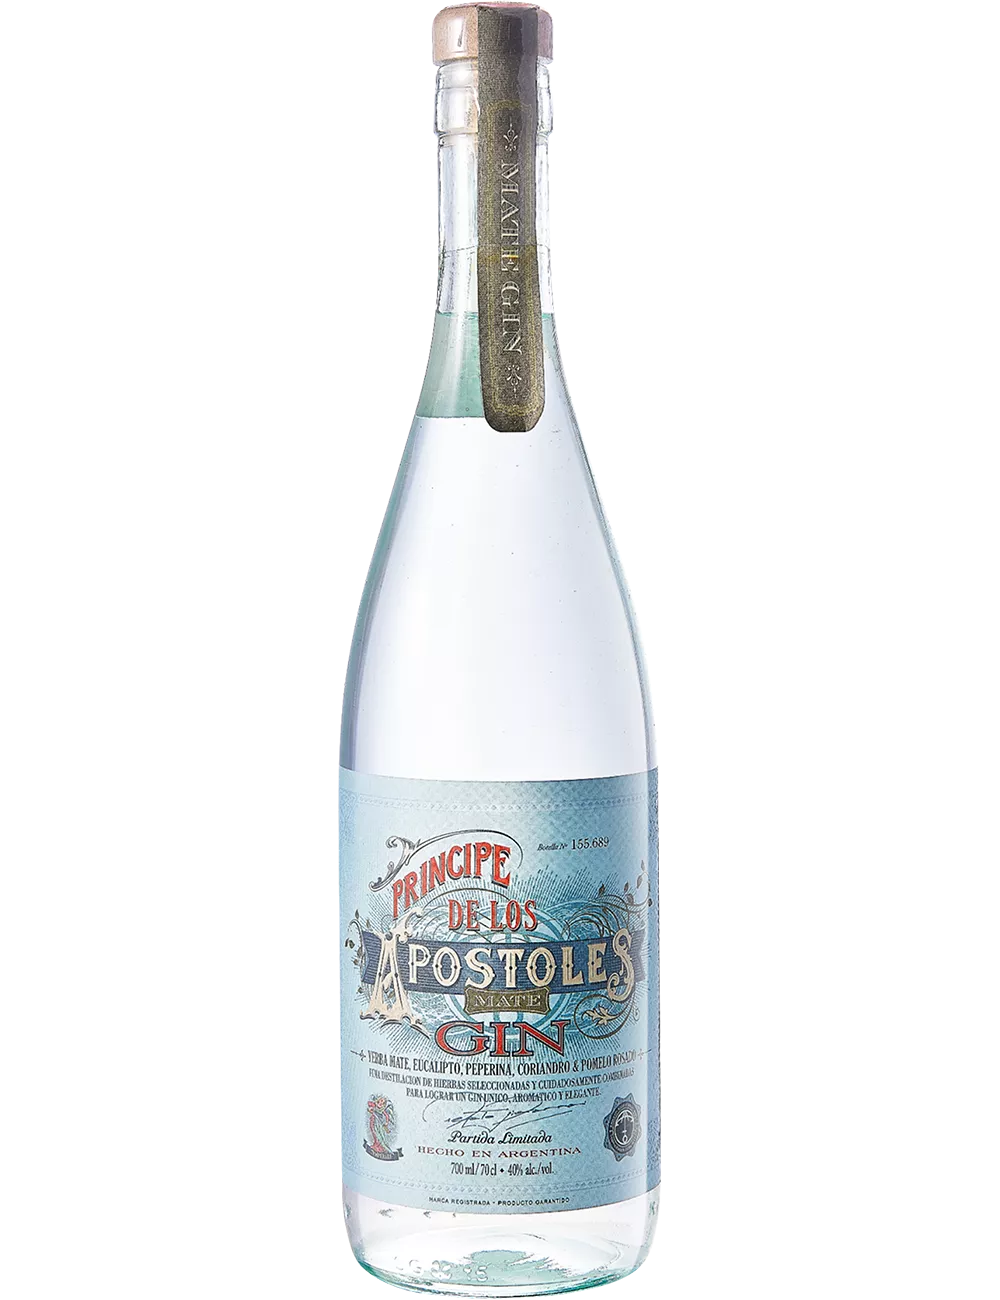 Principe de Los Apostoles - Distilled gin